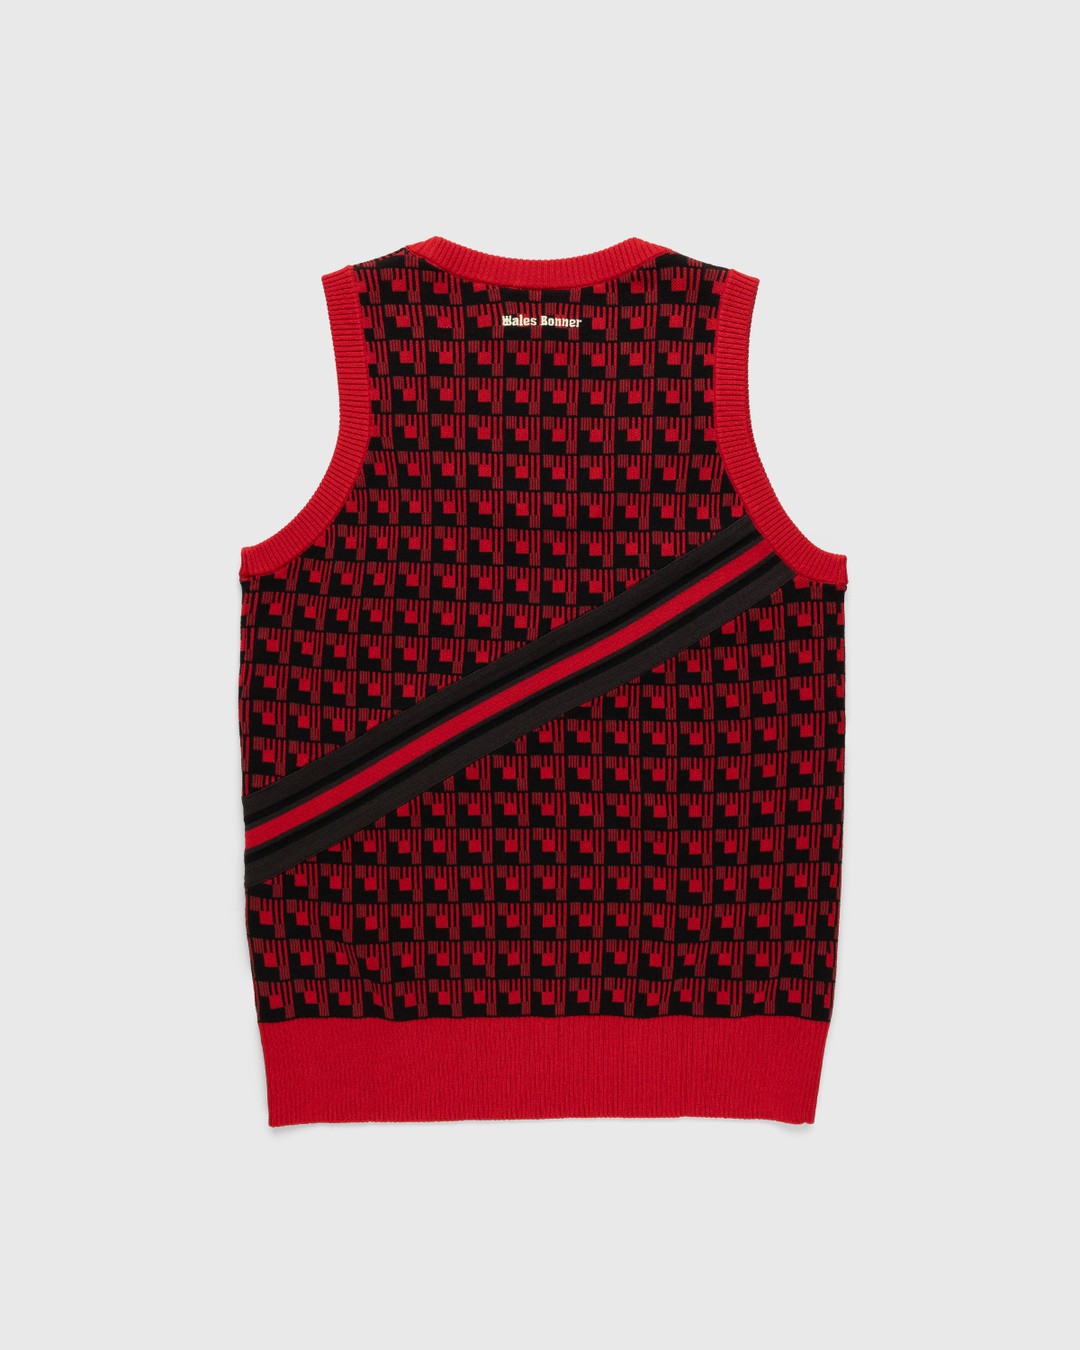 Adidas x Wales Bonner – WB Knit Vest Scarlet/Black - Gilets - Red - Image 2